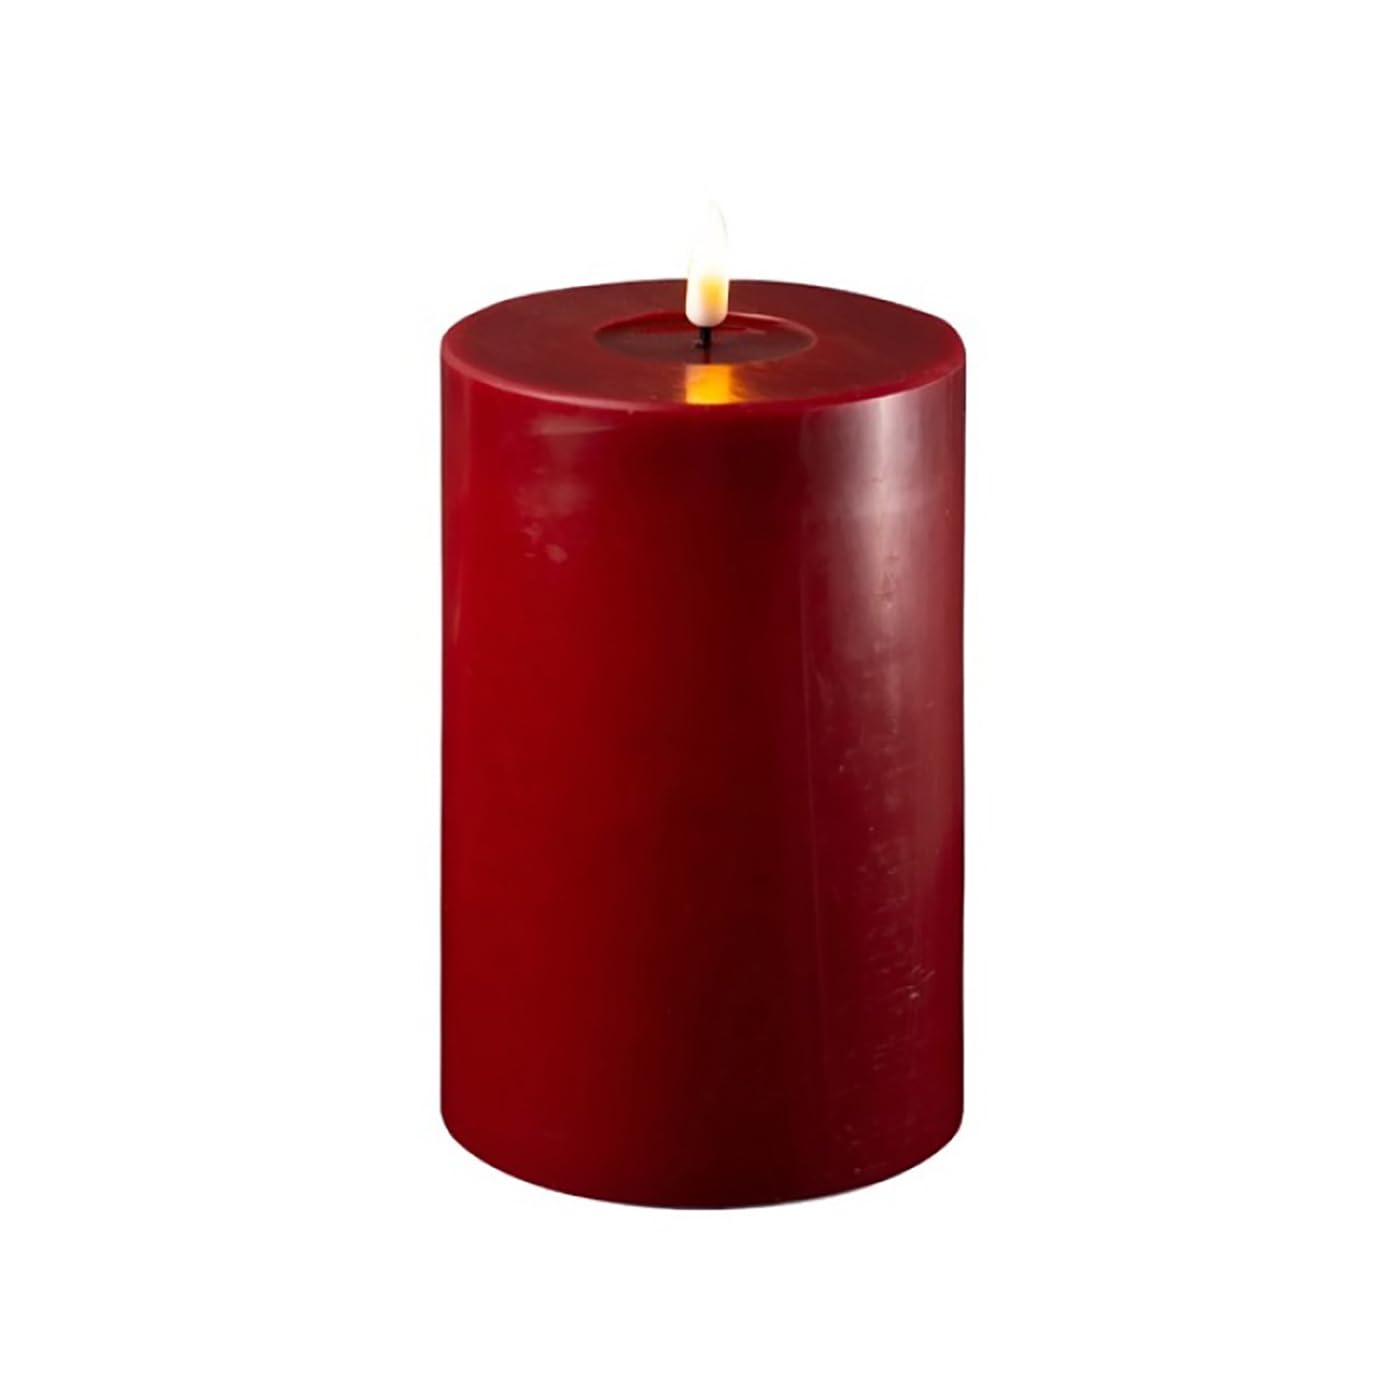 ReWu LED Kerze Deluxe Homeart, Indoor LED-Kerze mit realistischer Flamme auf einem Echtwachsspiegel, warmweißes Licht -Bordeaux 10 x 15 cm